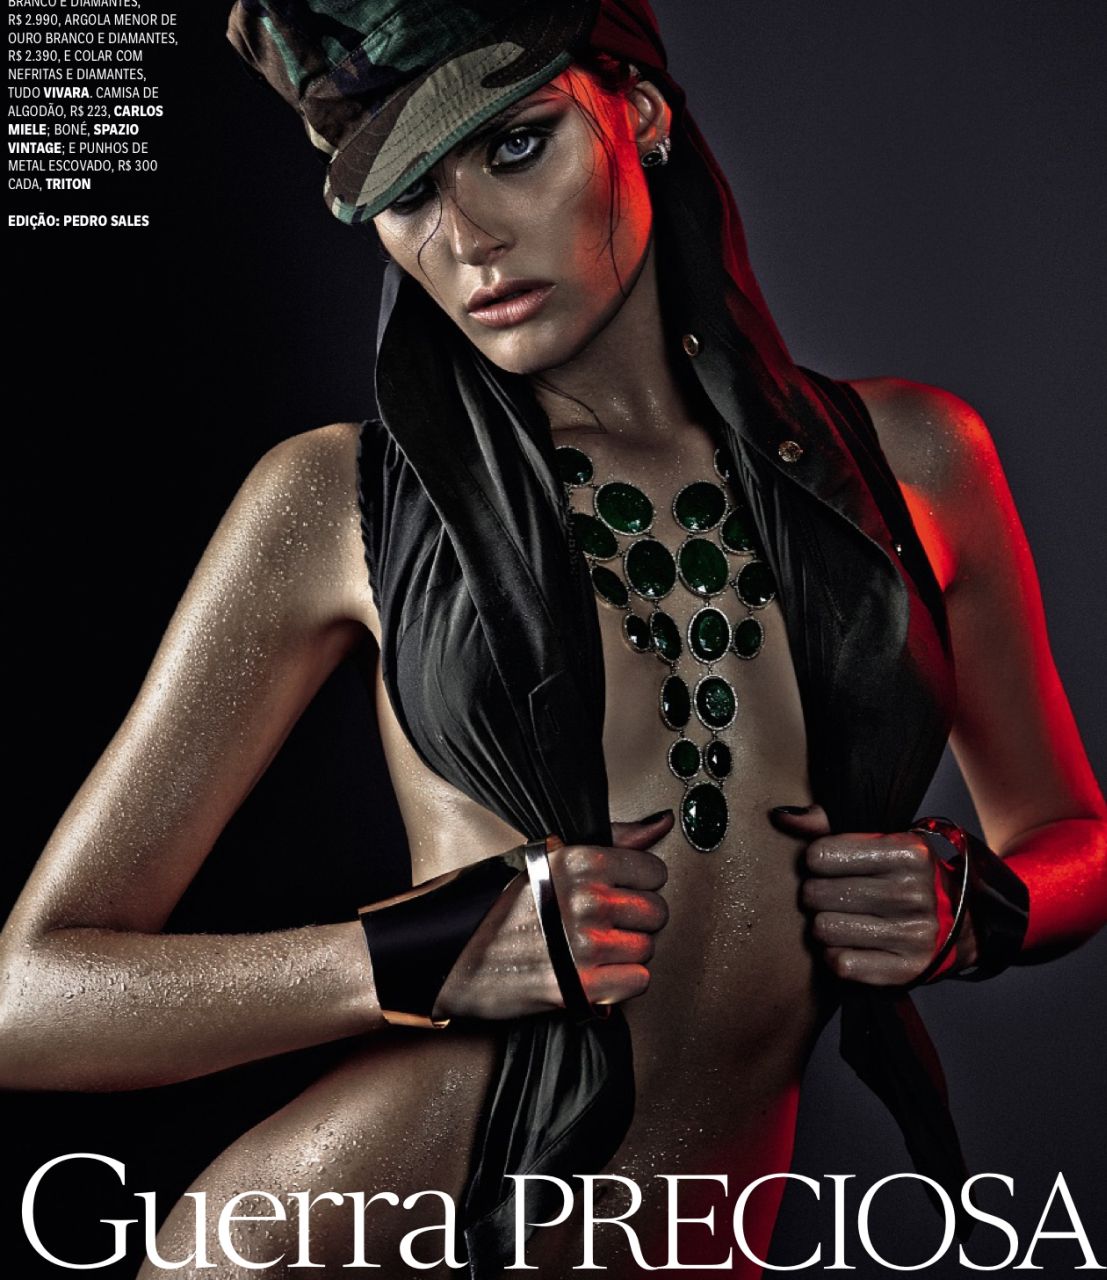 Isabeli Fontana - brazylijska modelka w kuszącej sesji z brazylijskiego Vogue